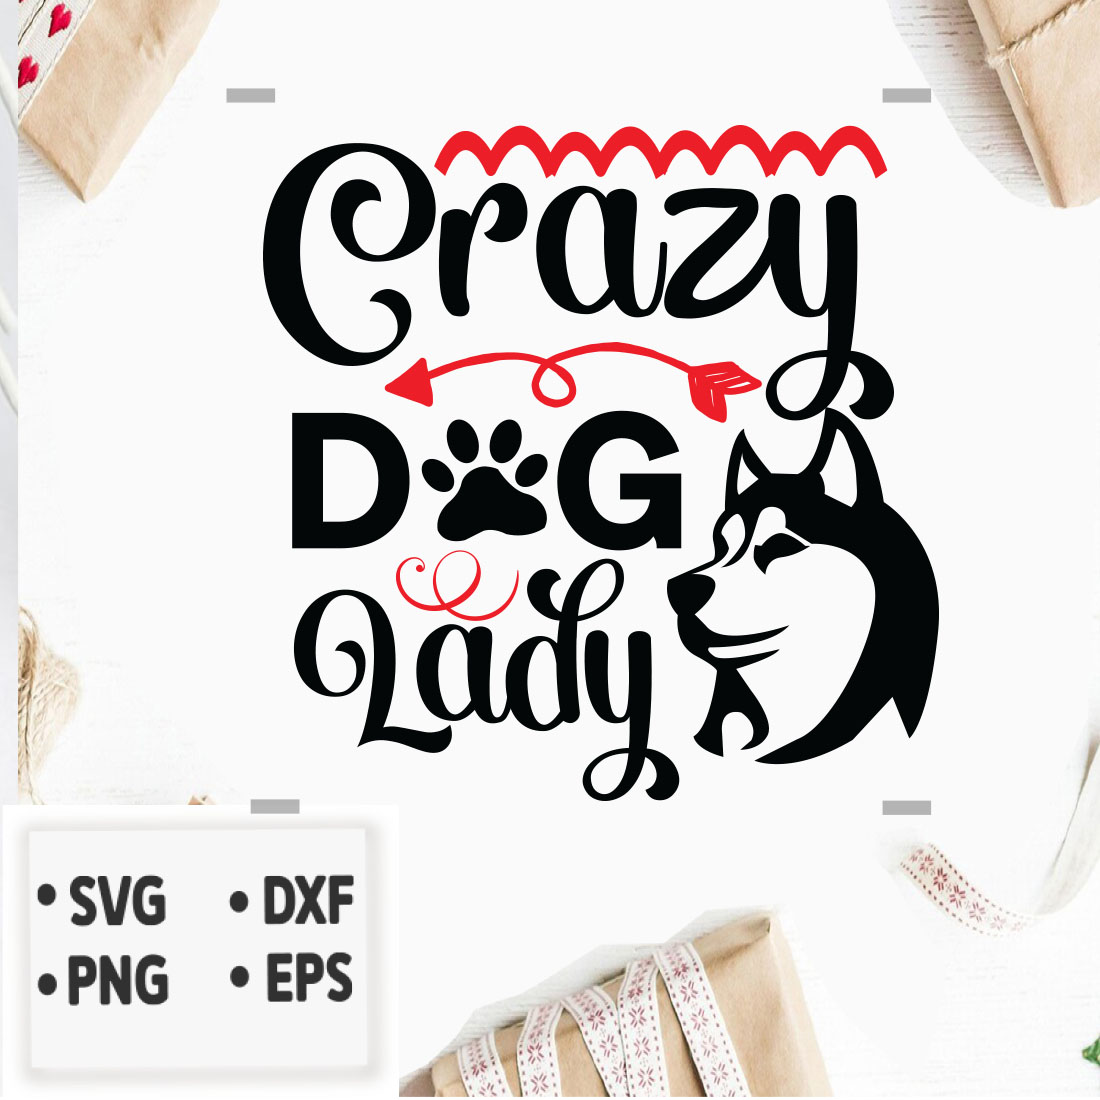 Crazy Dog Lady SVG T-shirt Design Bundle facebook image.